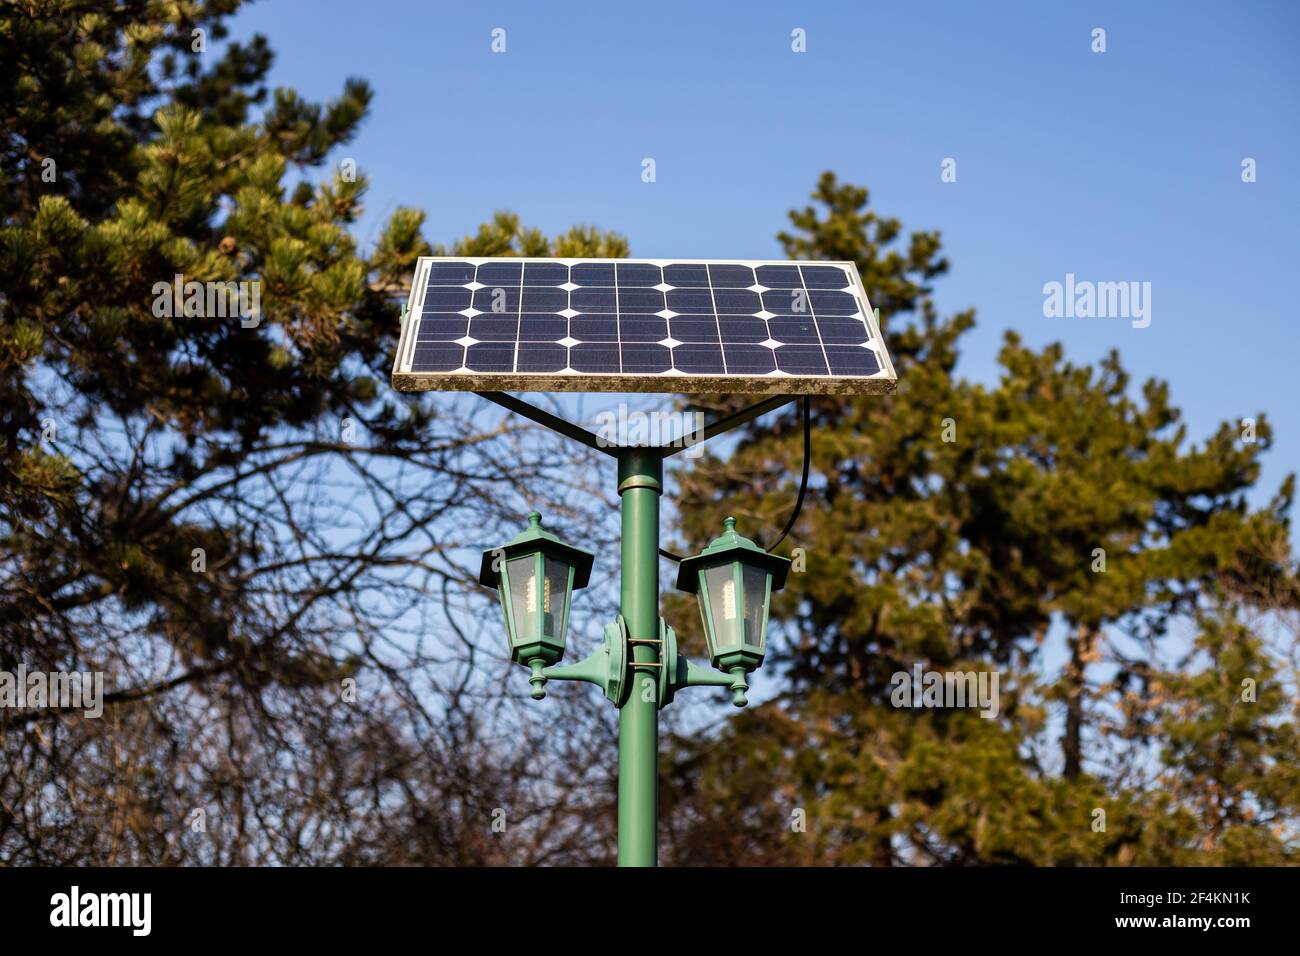 Batterie solaire connectée à la lanterne dans le parc. Une méthode très efficace pour un environnement plus propre sans frais supplémentaires Banque D'Images